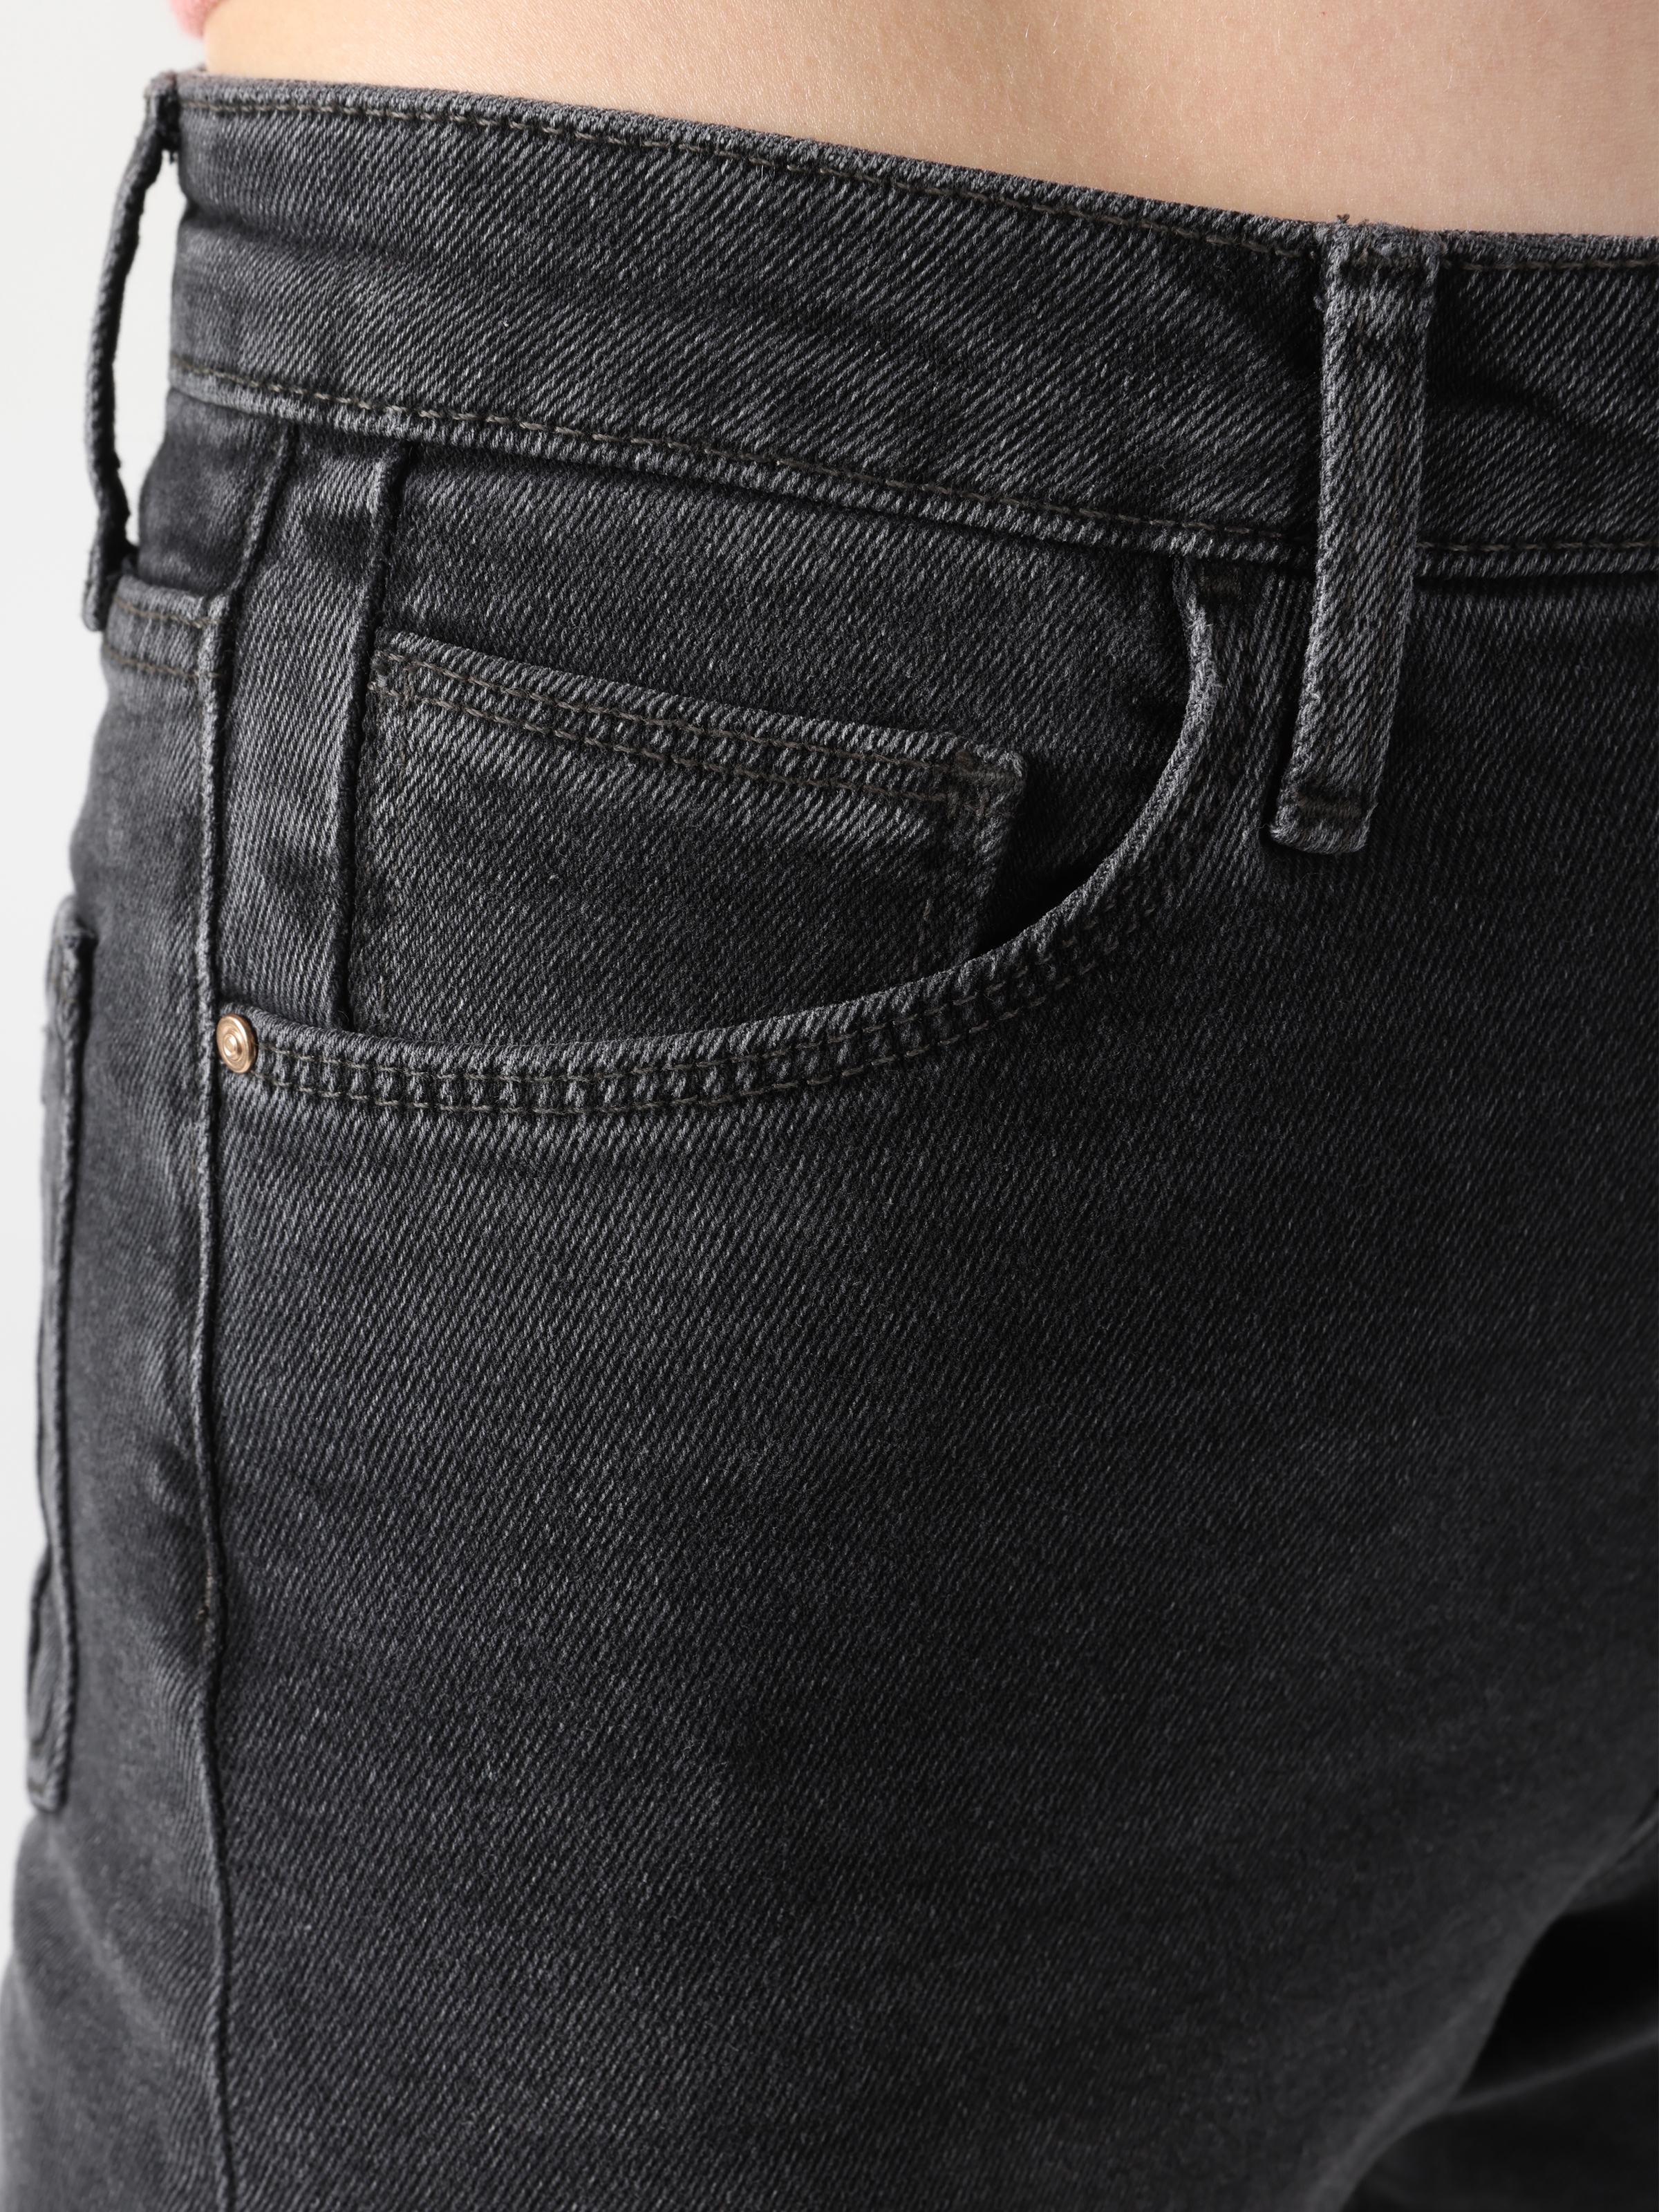 Afficher les détails de 891 Maya Pantalon En Jean Gris Pour Femme, Coupe Slim, Taille Normale, Jambe Effilée